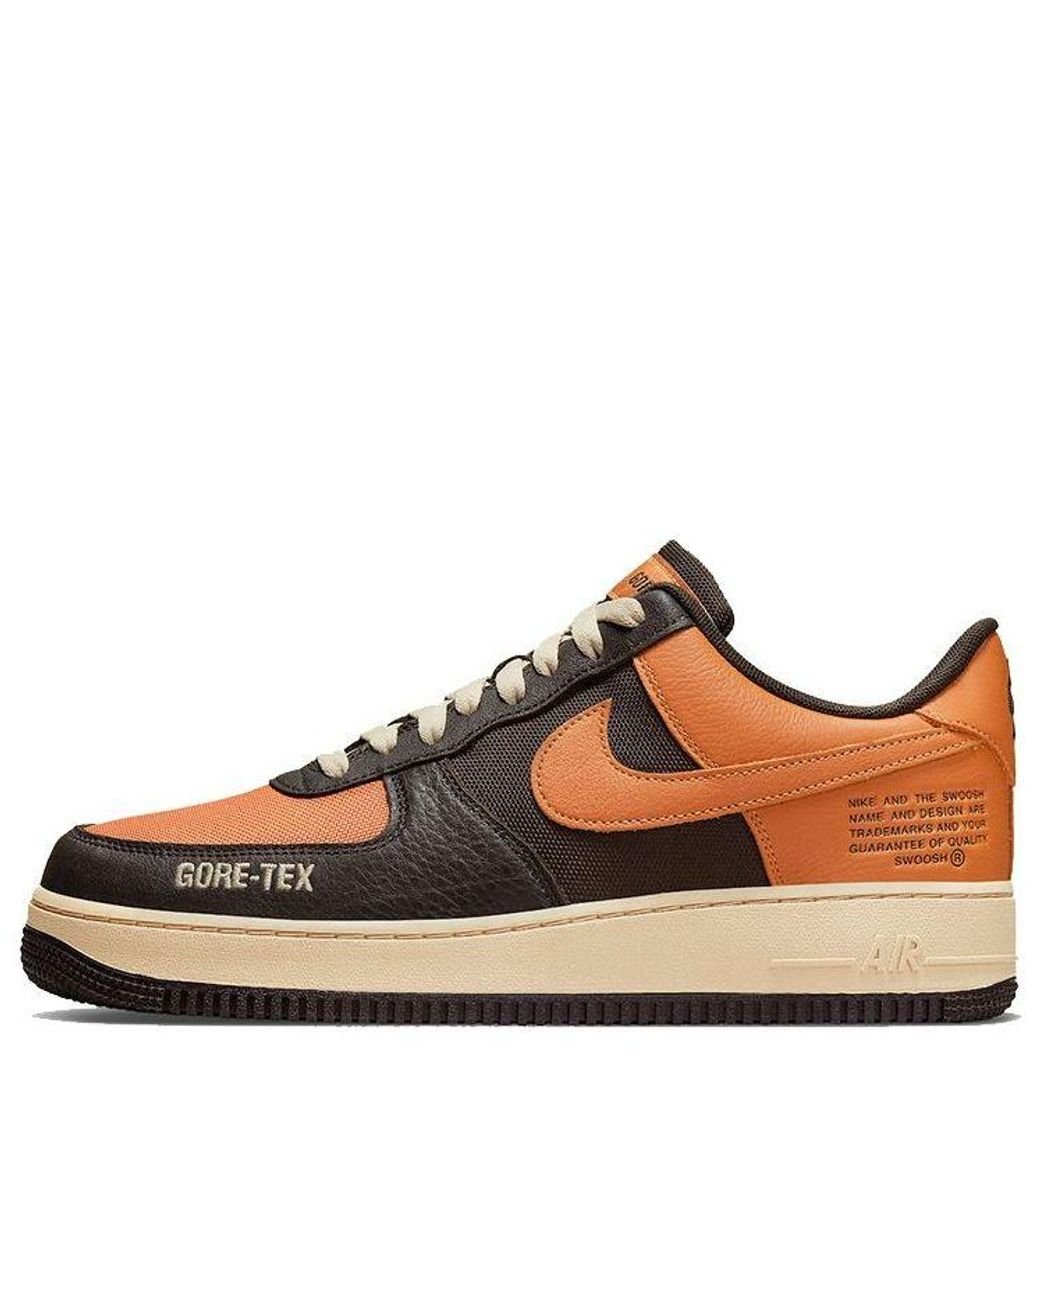 Nike Air Force 1 Gore-tex Low-top Sneakers Brown/orange for Men | Lyst